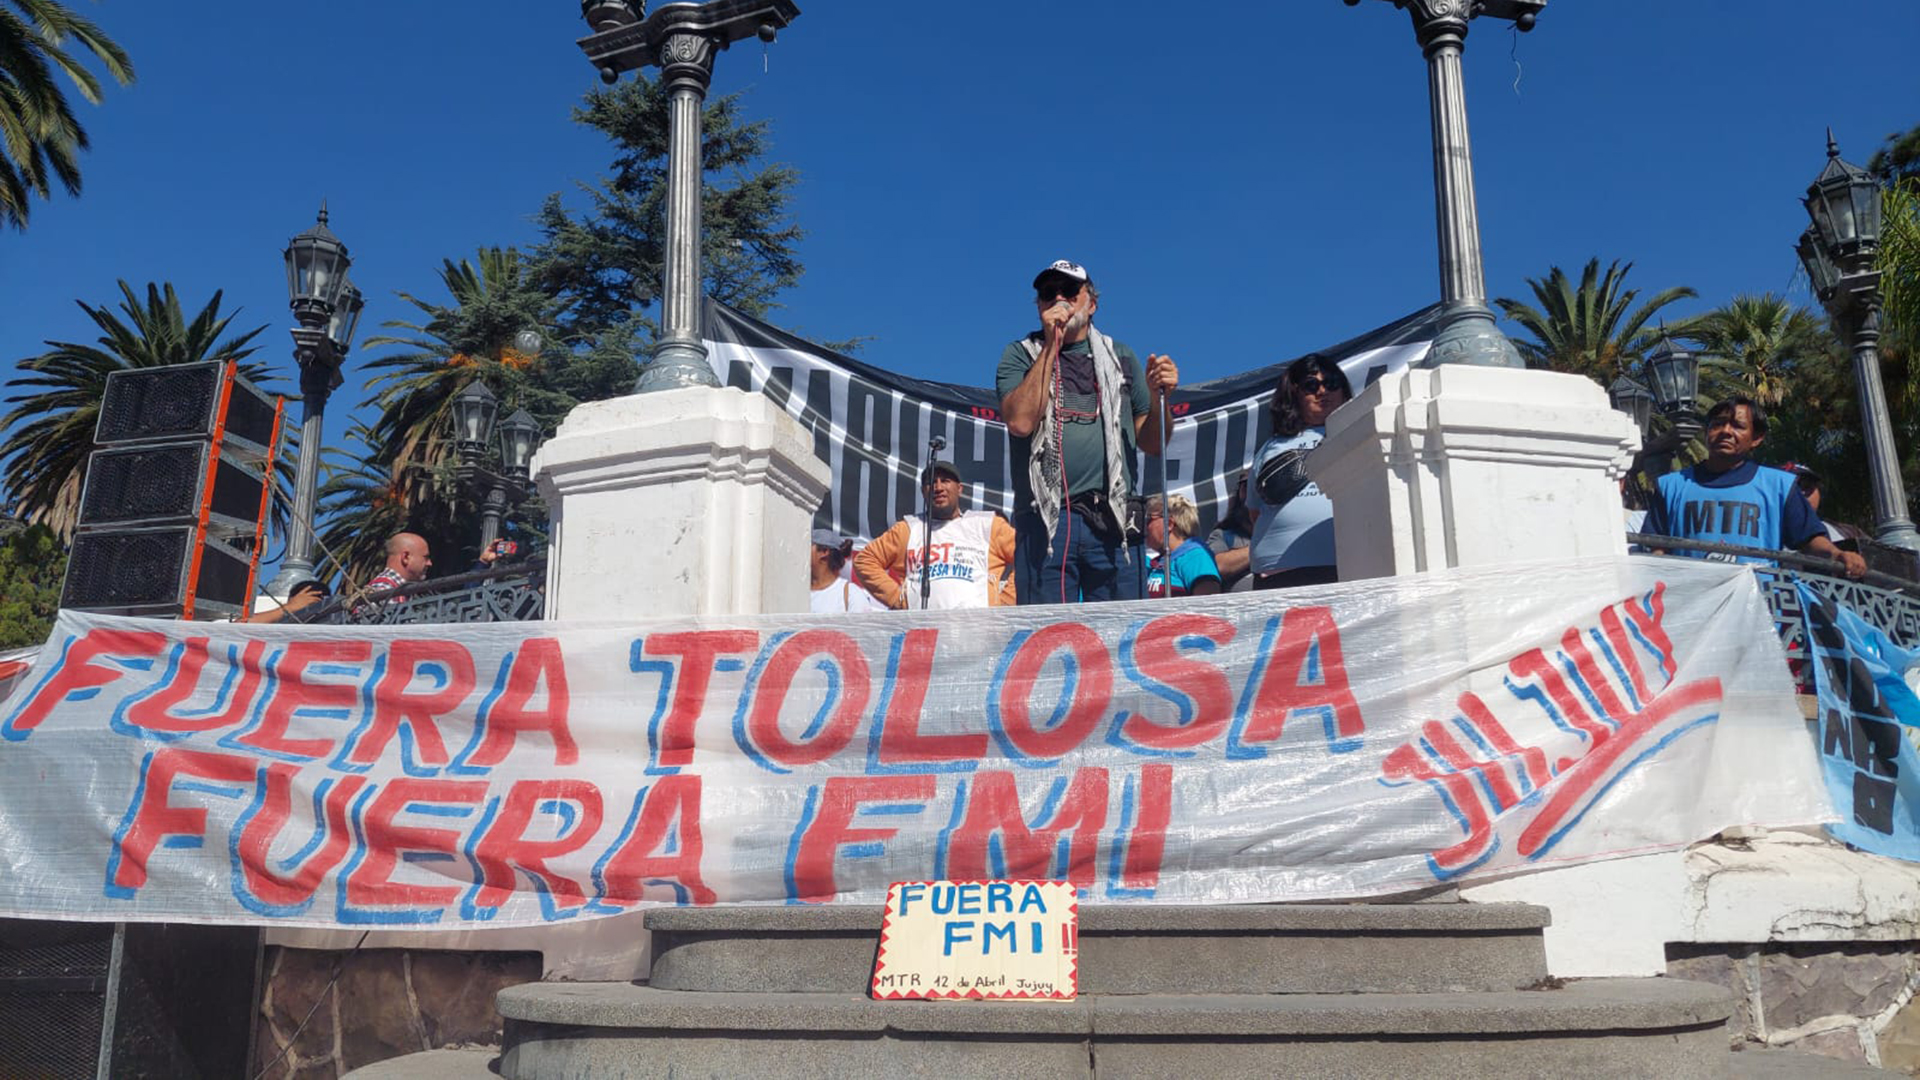 La Marcha Federal llega a Plaza de Mayo. Acamparán y mañana se movilizarán junto a las organizaciones oficialistas contra el FMI y la política económica y social